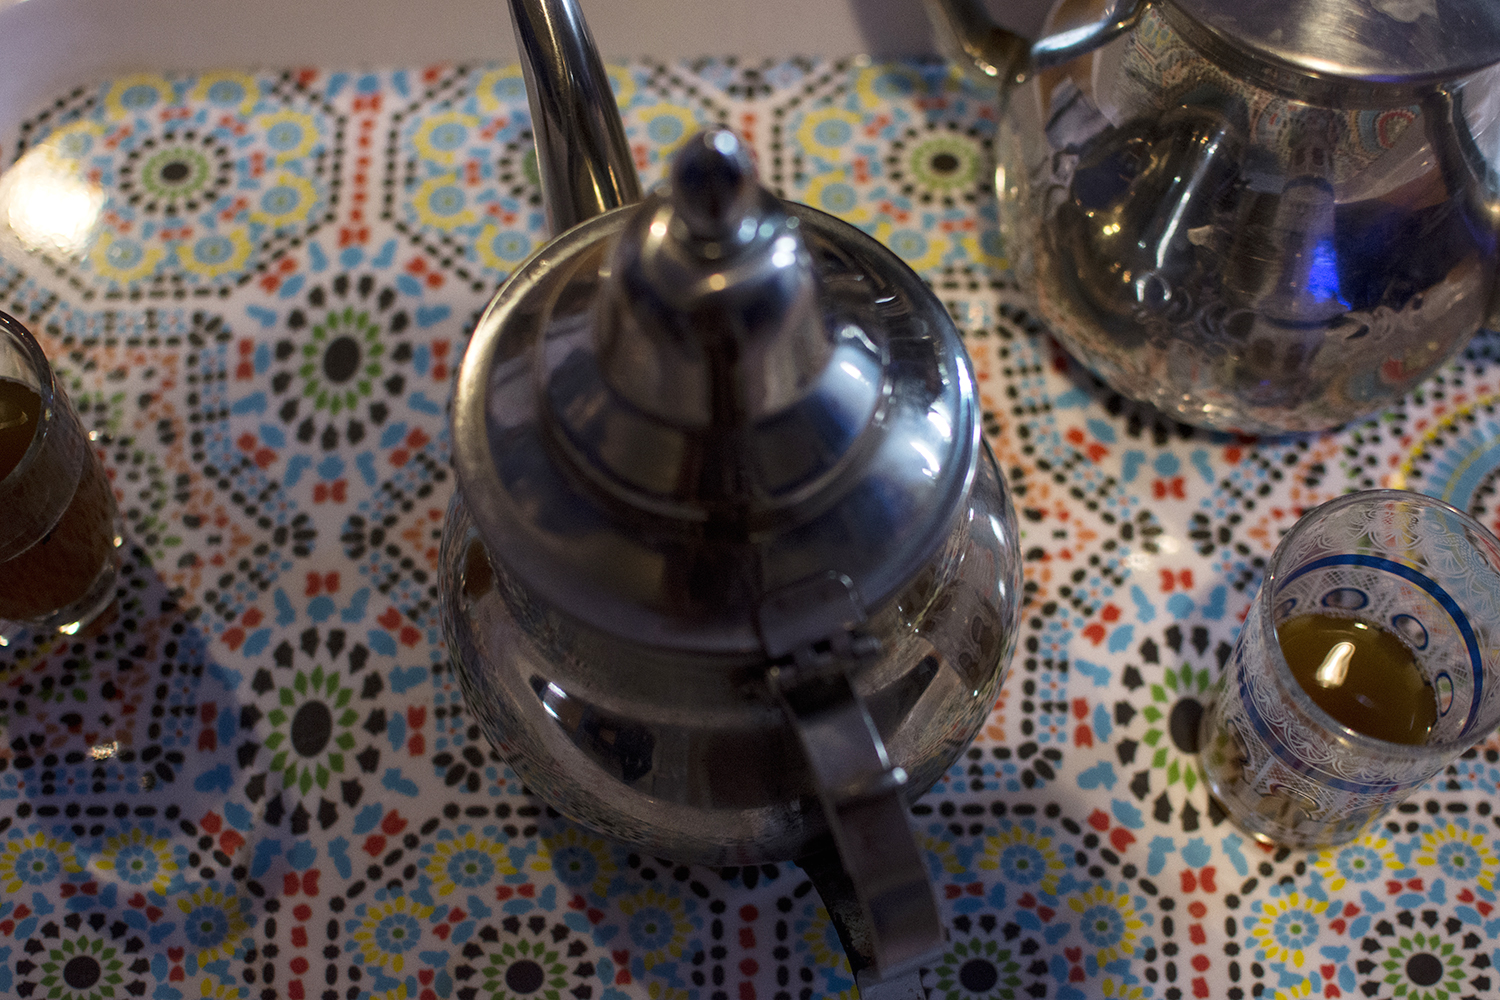 Les règles de l’hospitalité marocaine exigent qu’une rencontre se termine par du thé à la menthe et de délicieux petits gâteaux